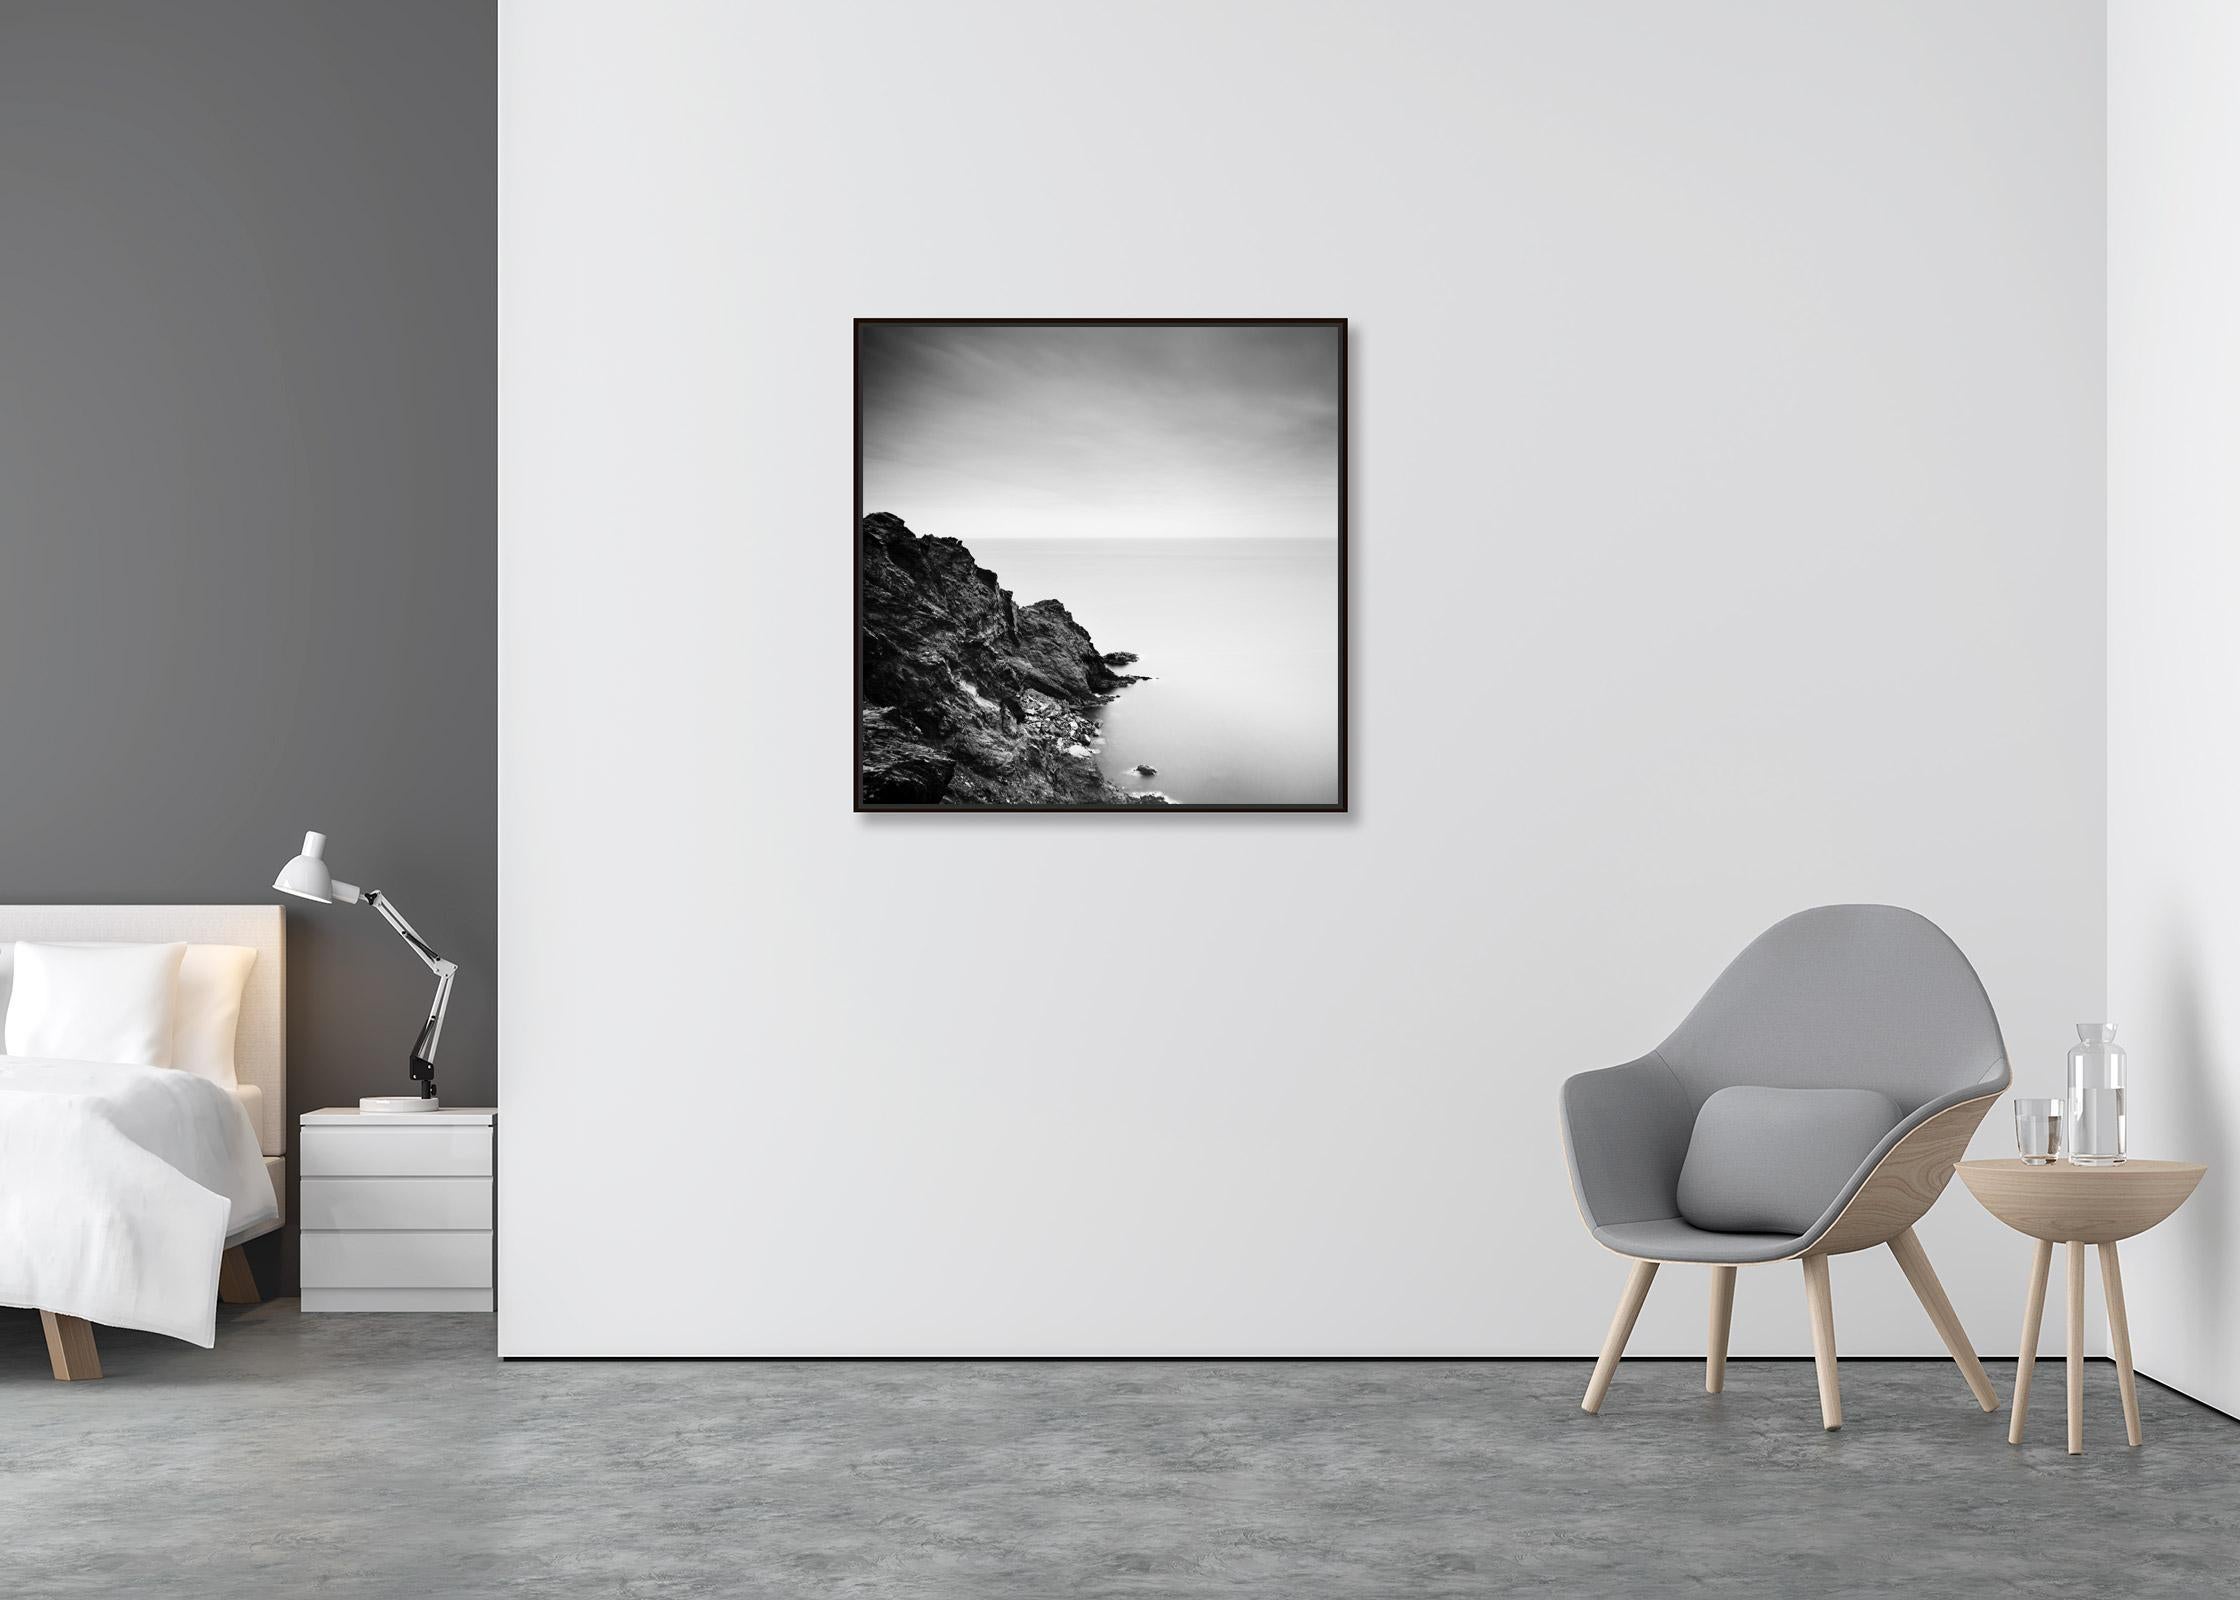 Côte atlantique, Whiting, Portugal, photographie noir et blanc, paysage fine art - Contemporain Photograph par Gerald Berghammer, Ina Forstinger